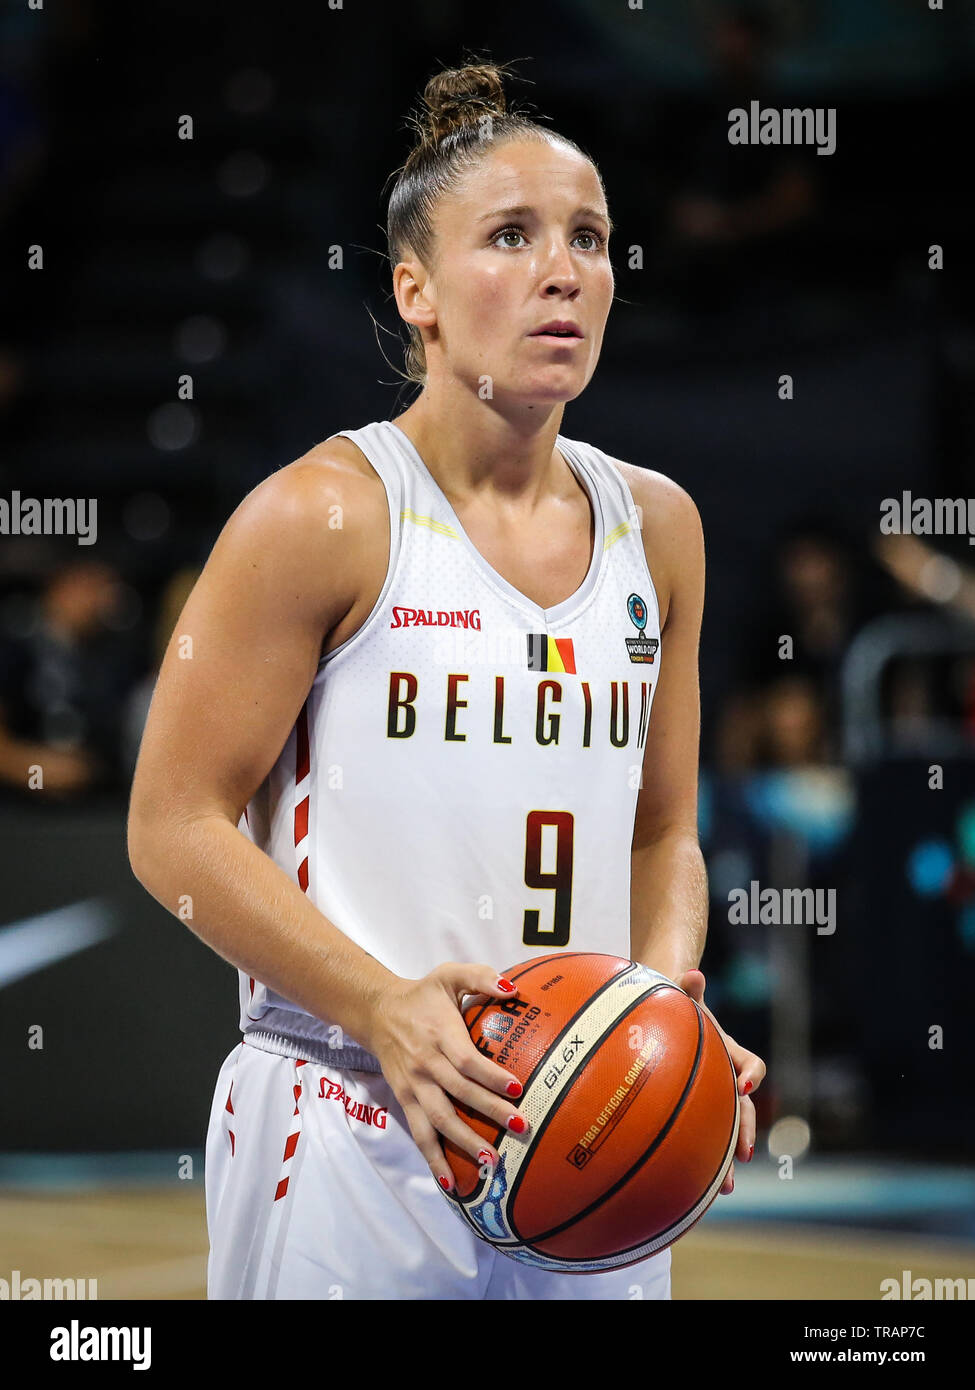 Tenerife Spain September 28 2018 Belgian Basketball Player Marjorie